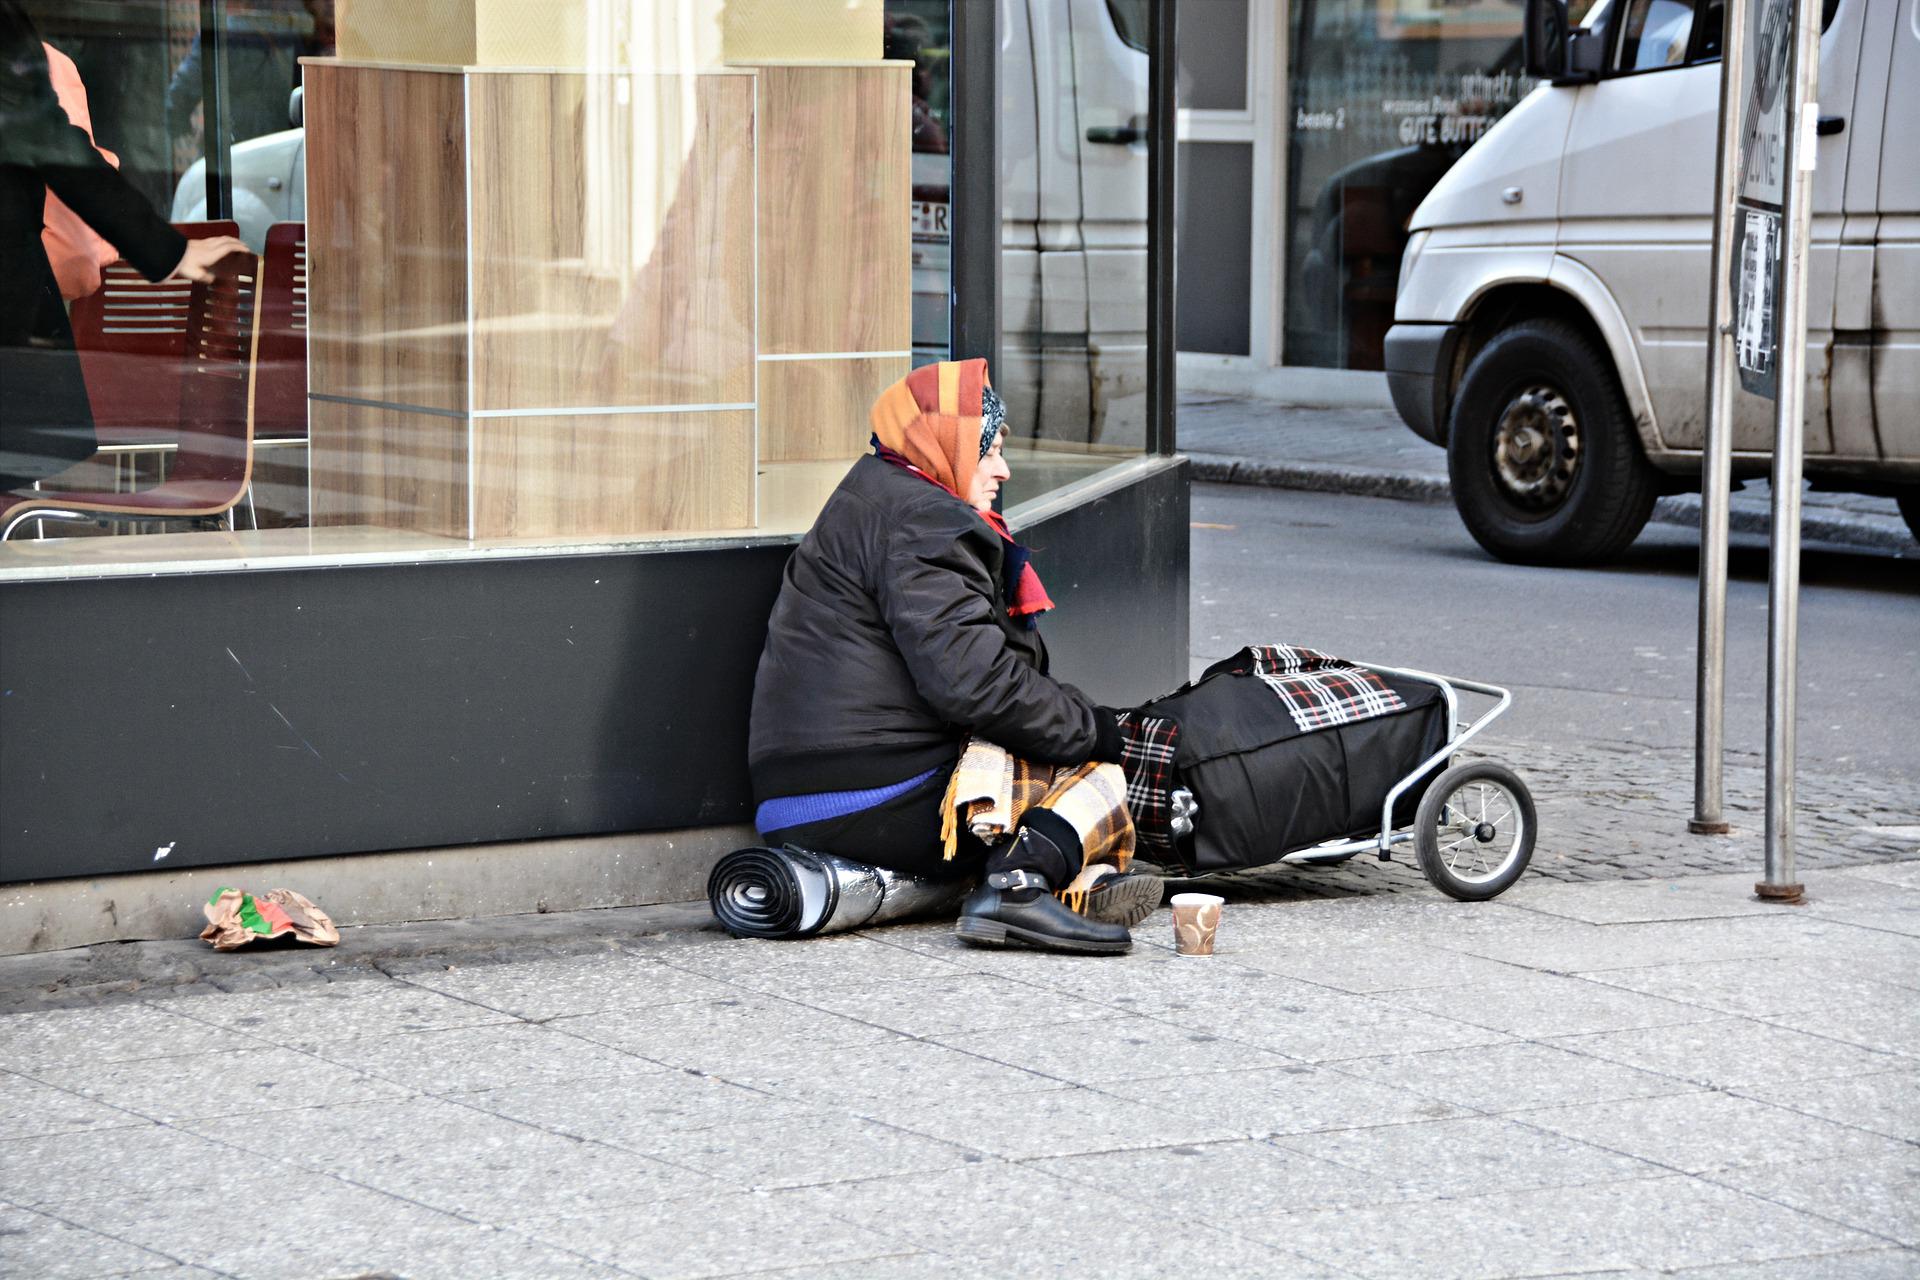 Dal Reddito di inclusione al RdC: una donna in povertà seduta all'angolo della strada.